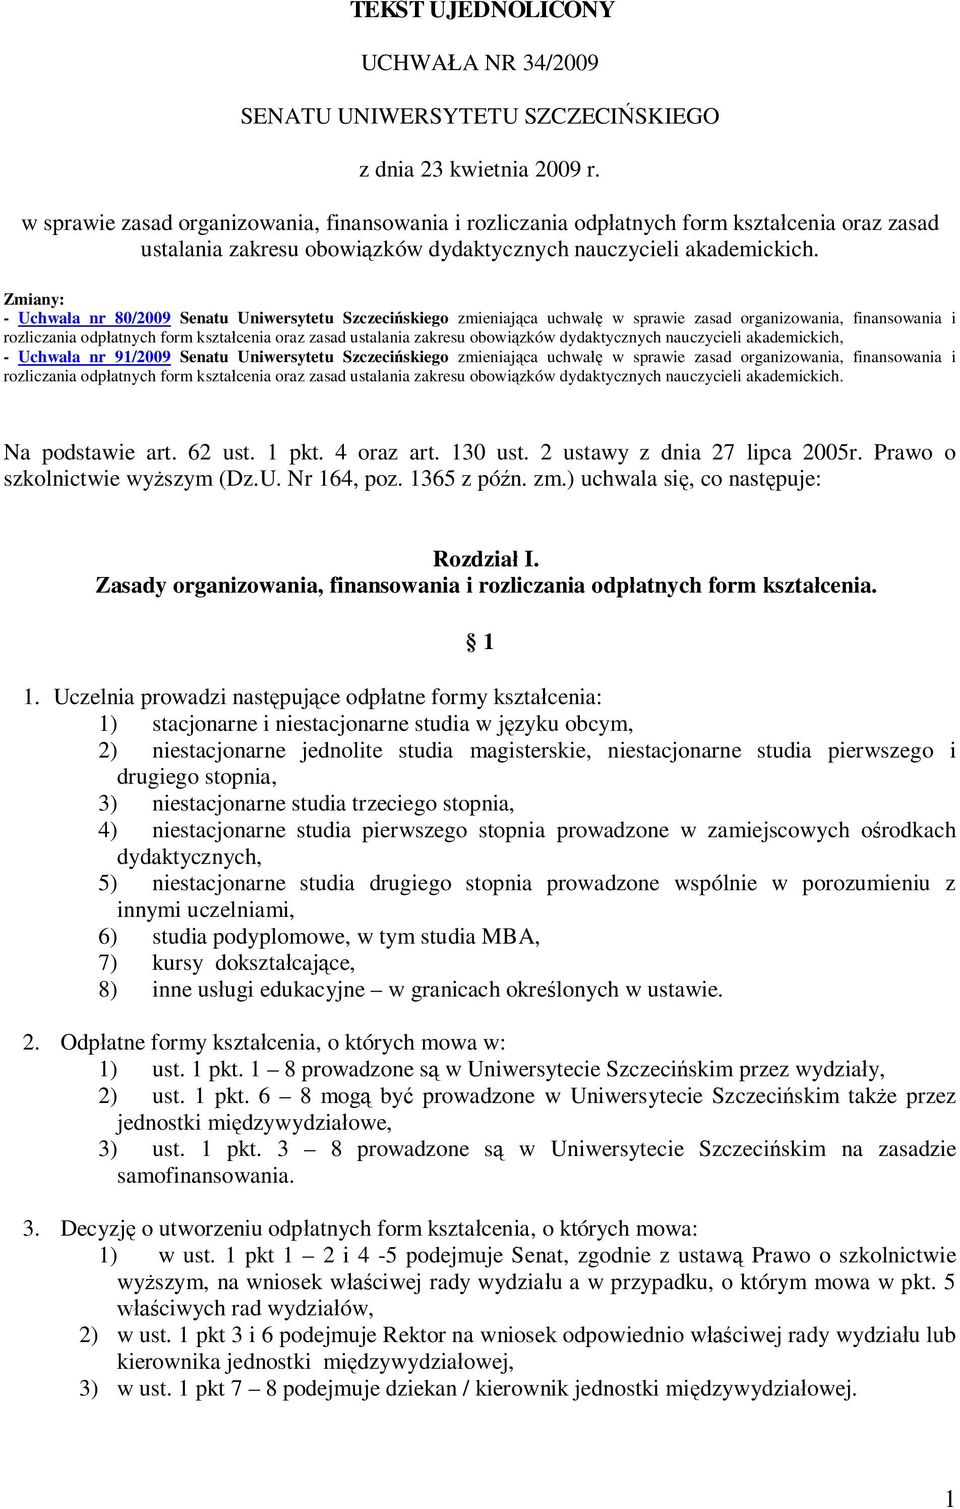 Zmiany: - Uchwała nr 80/2009 Senatu Uniwersytetu Szczecińskiego zmieniająca uchwałę w sprawie zasad organizowania, finansowania i rozliczania odpłatnych form kształcenia oraz zasad ustalania zakresu